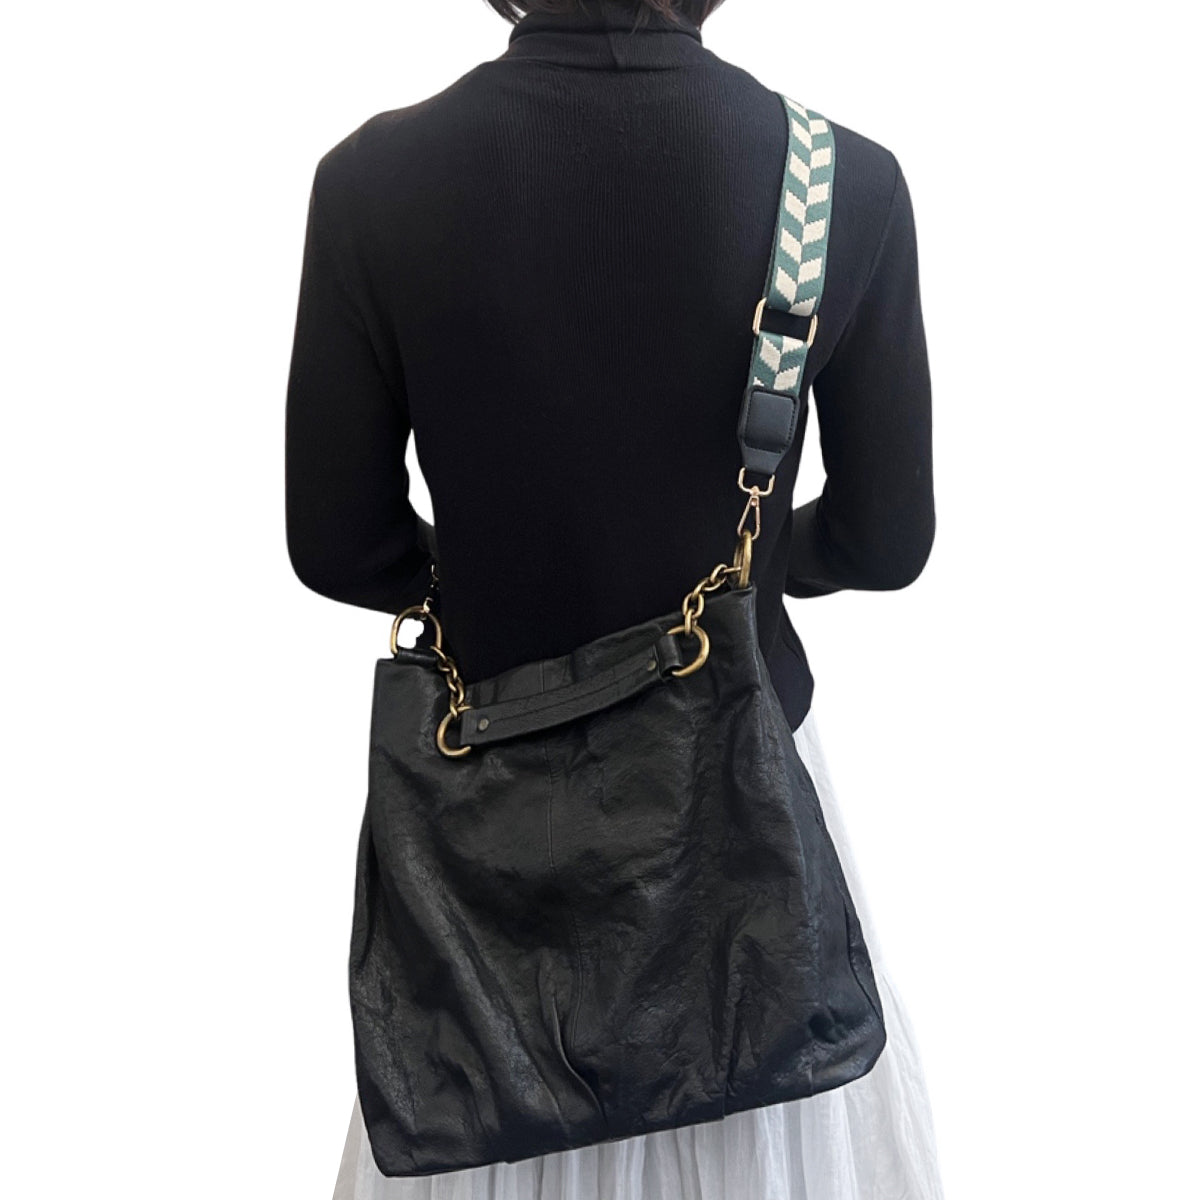 Smrinog Adjustable Bag Straps Nylon Wide Shoulder Belt Replacement Handbag  Purse Straps 